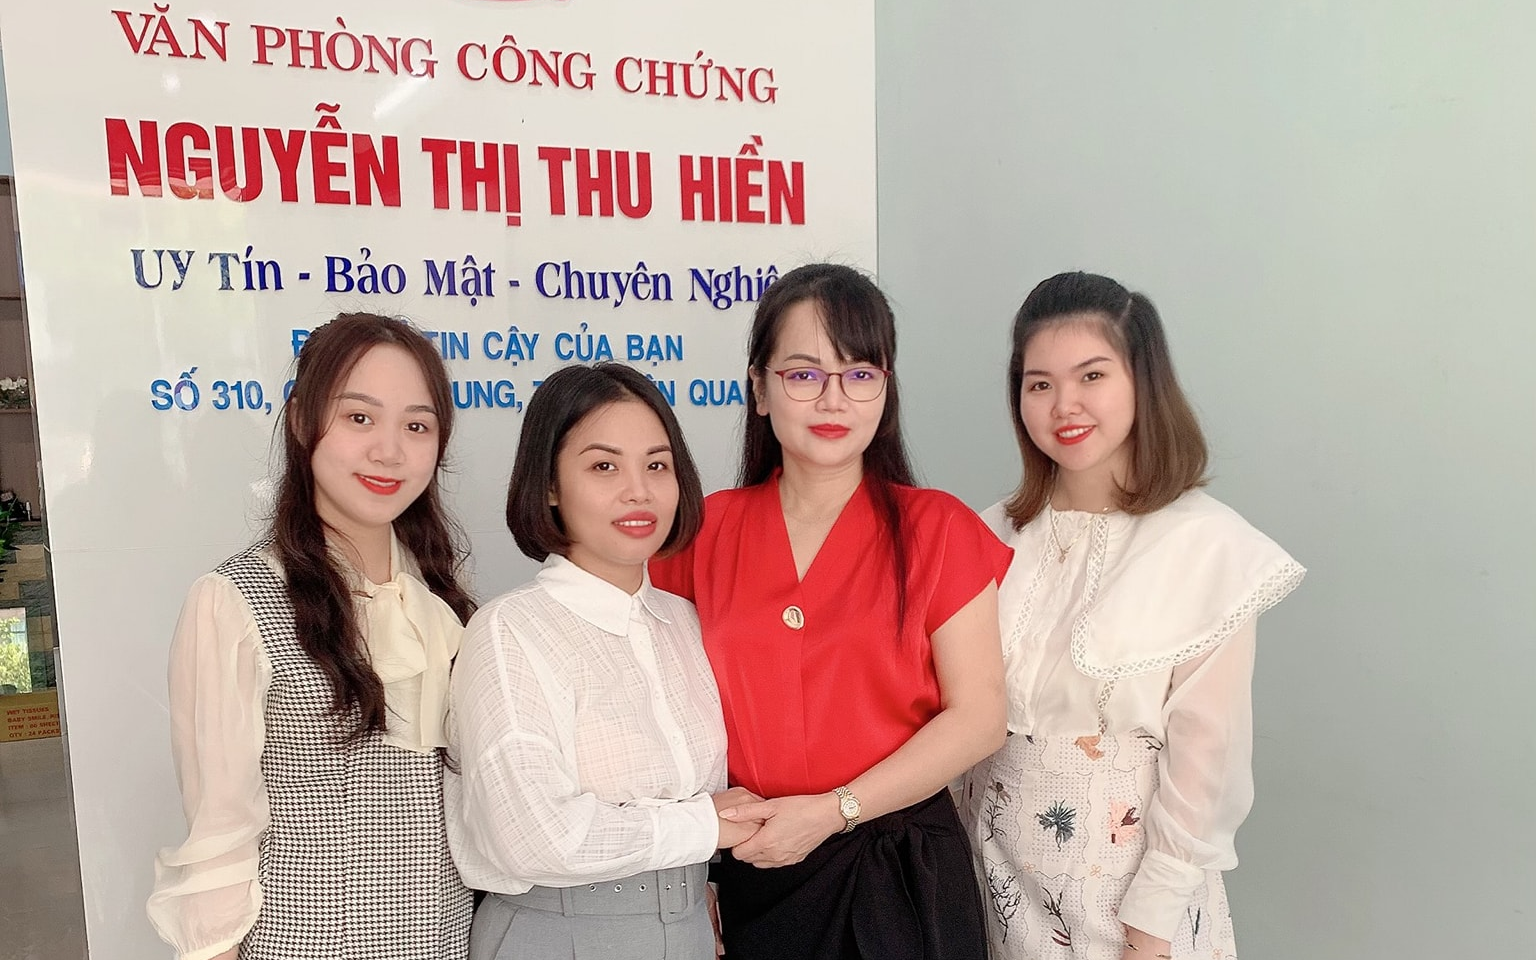 Văn phòng công chứng Nguyễn Thị Minh Hiền